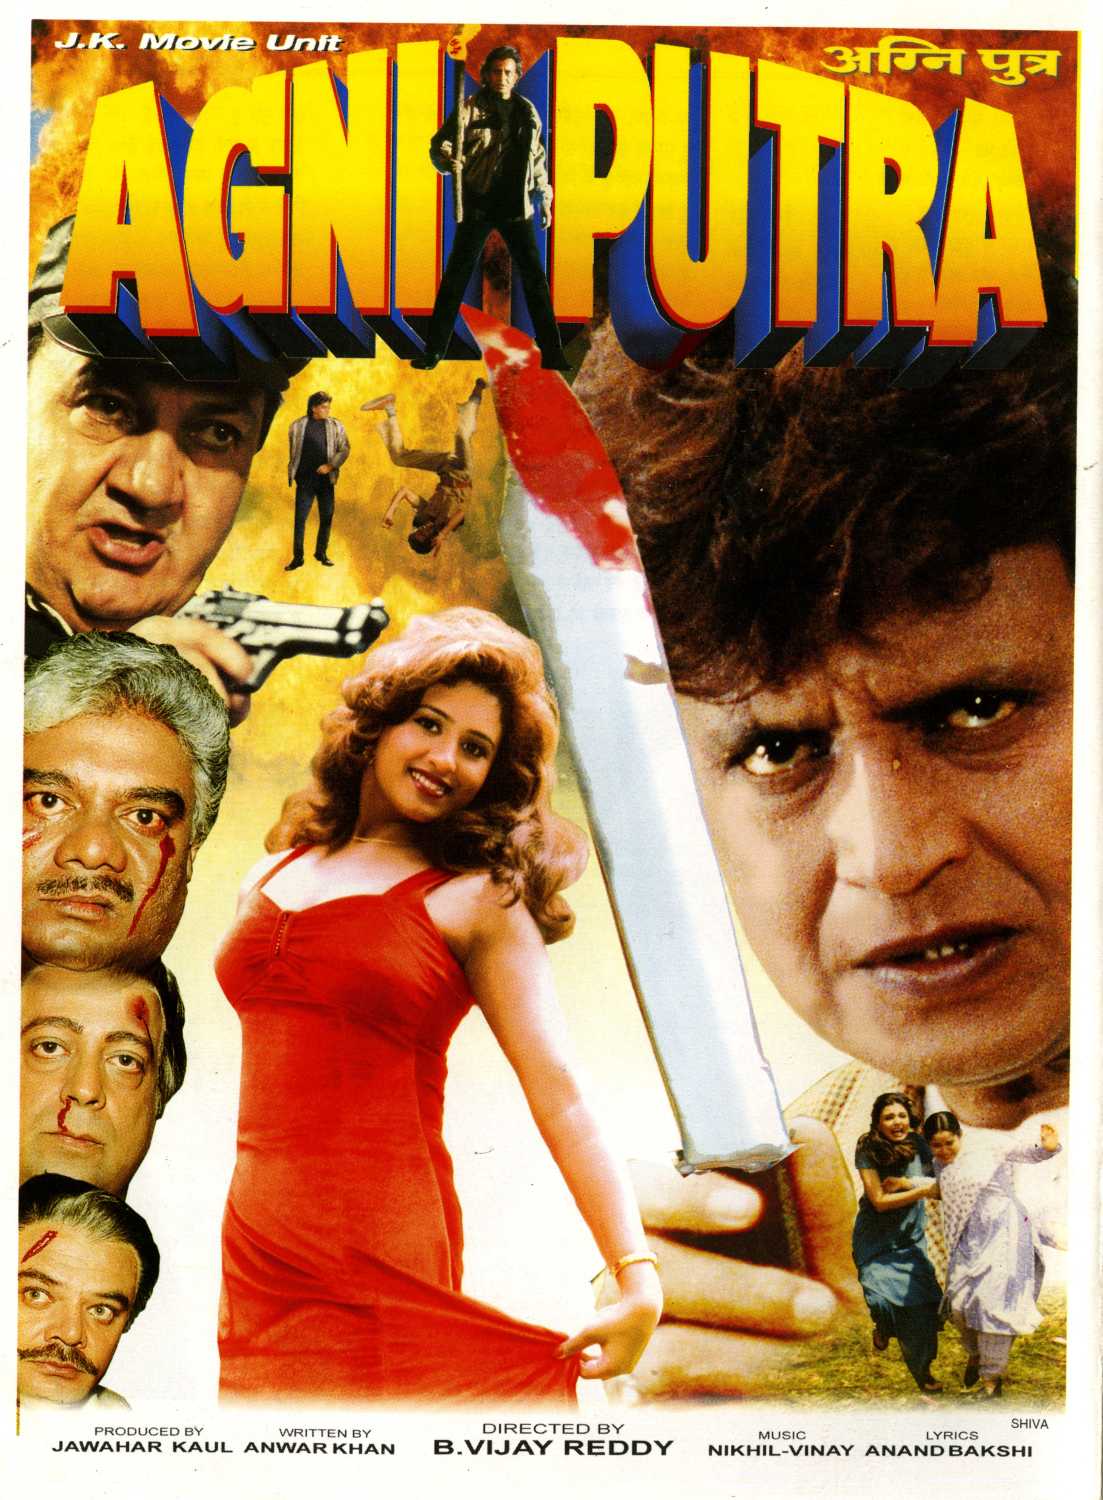 Agniputra 2000 19030 Poster.jpg